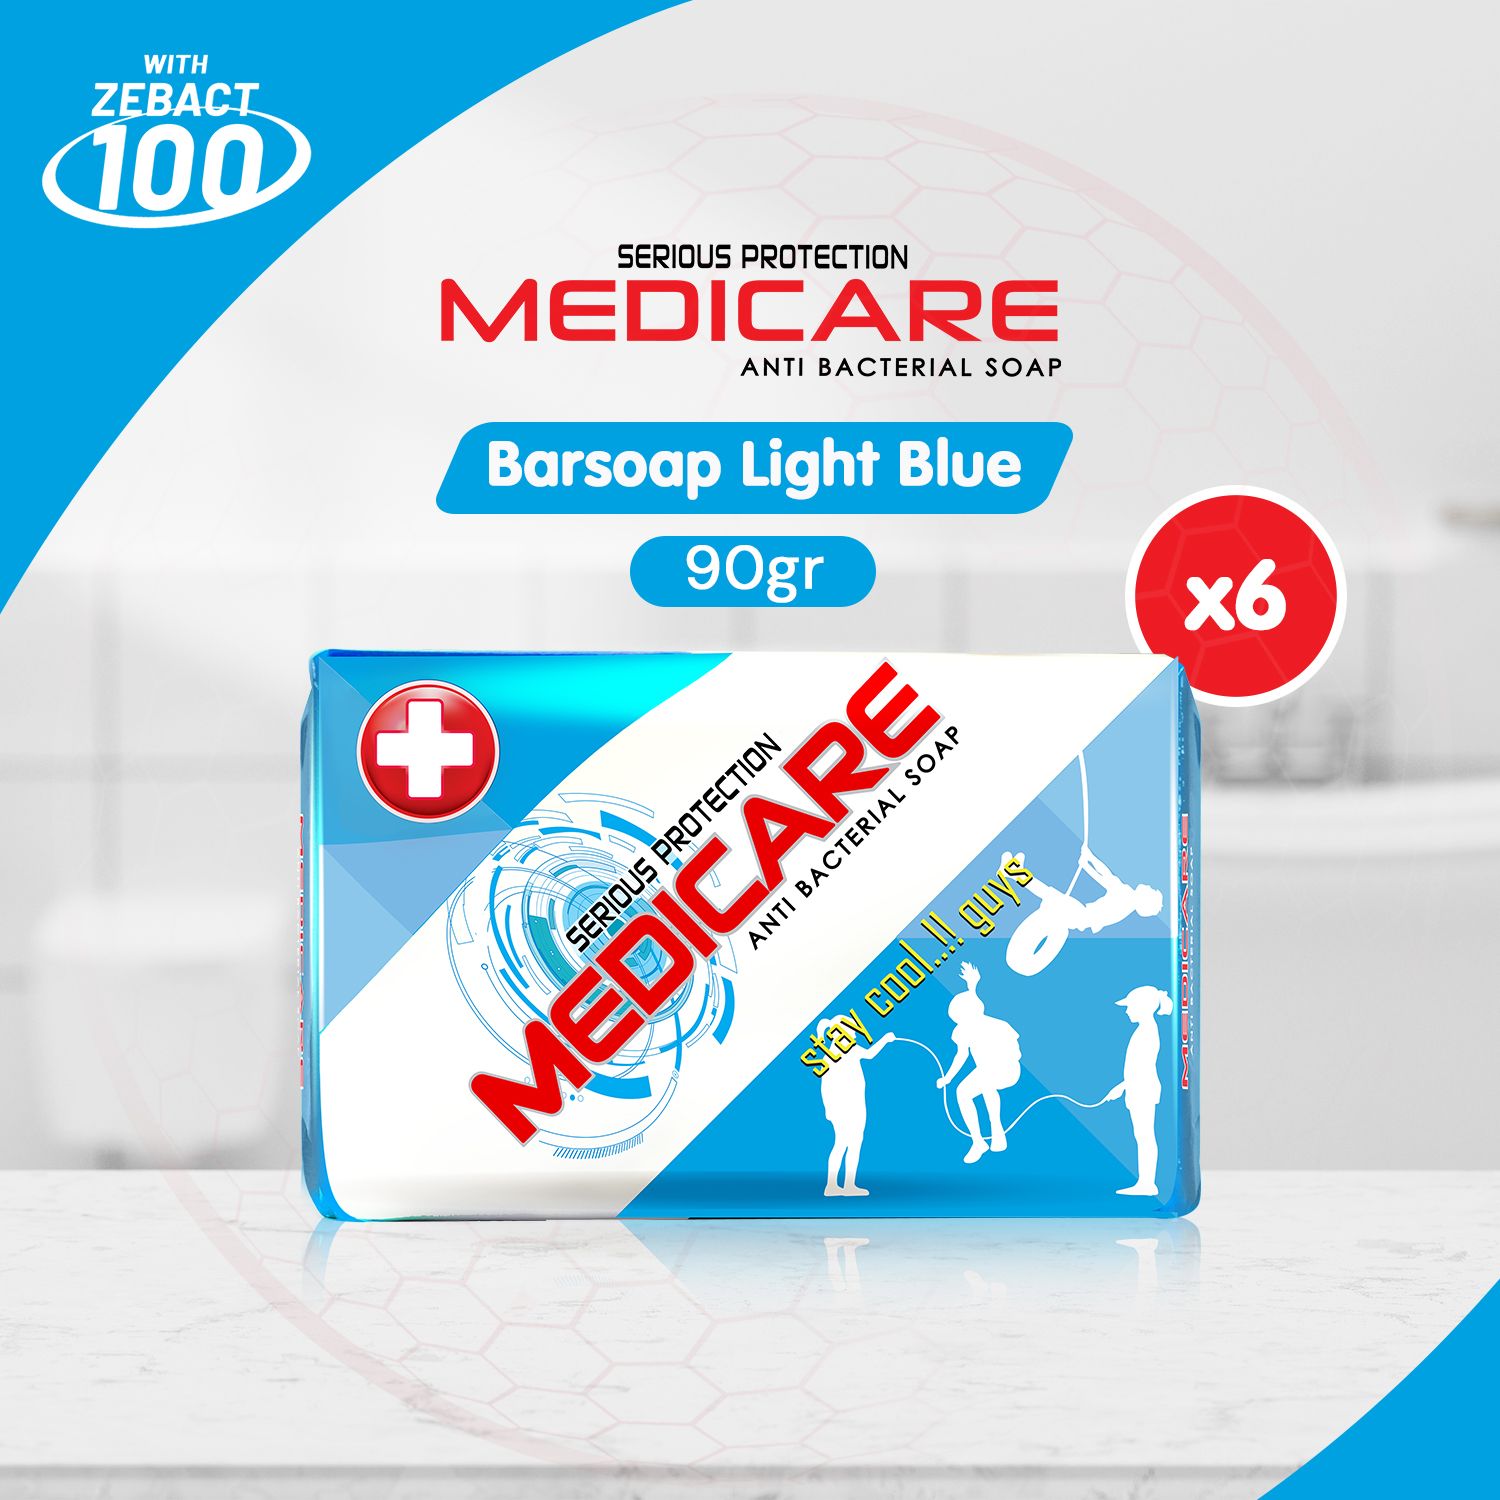 MEDICARE Sabun Antibakteri Light Blue 90g (6 pcs) - 1